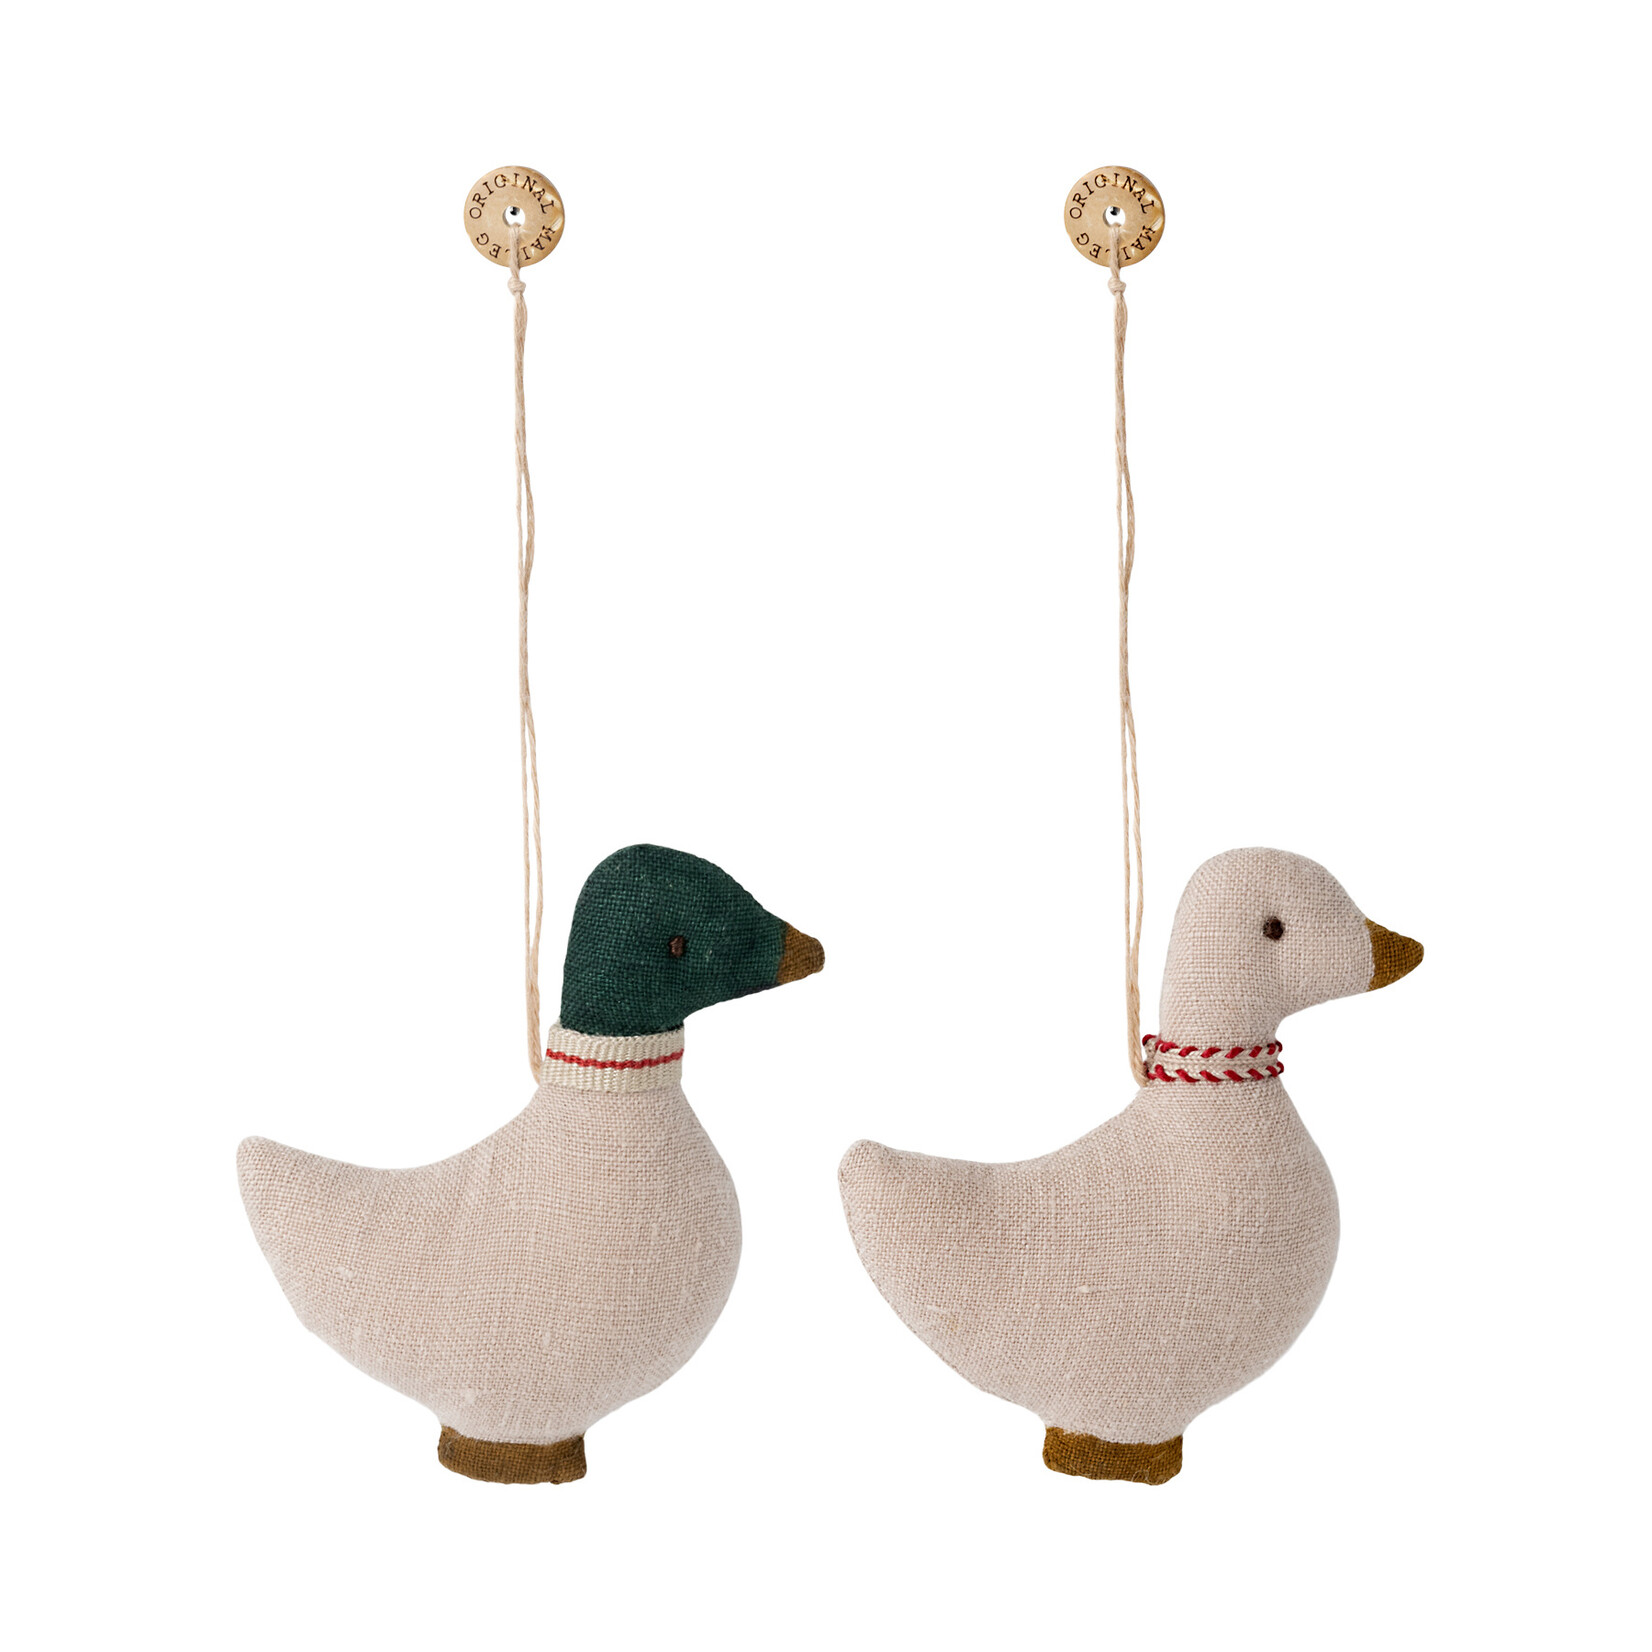 Maileg Maileg Duck ornament